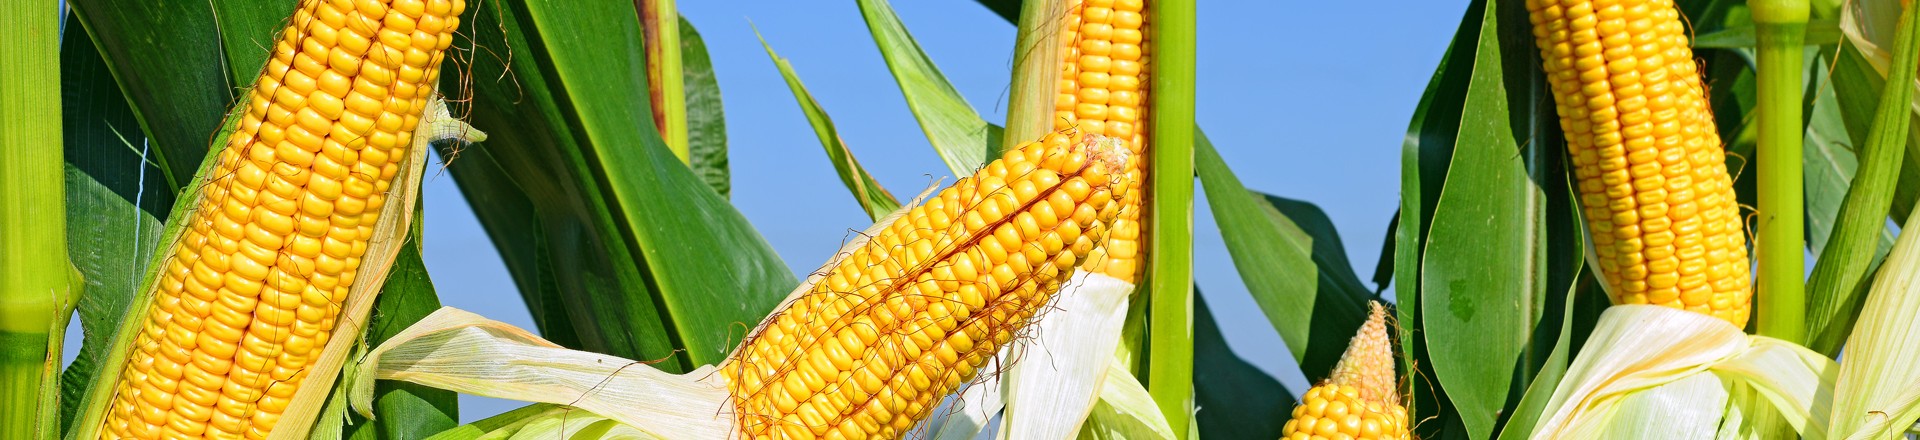 corn stalks in a field